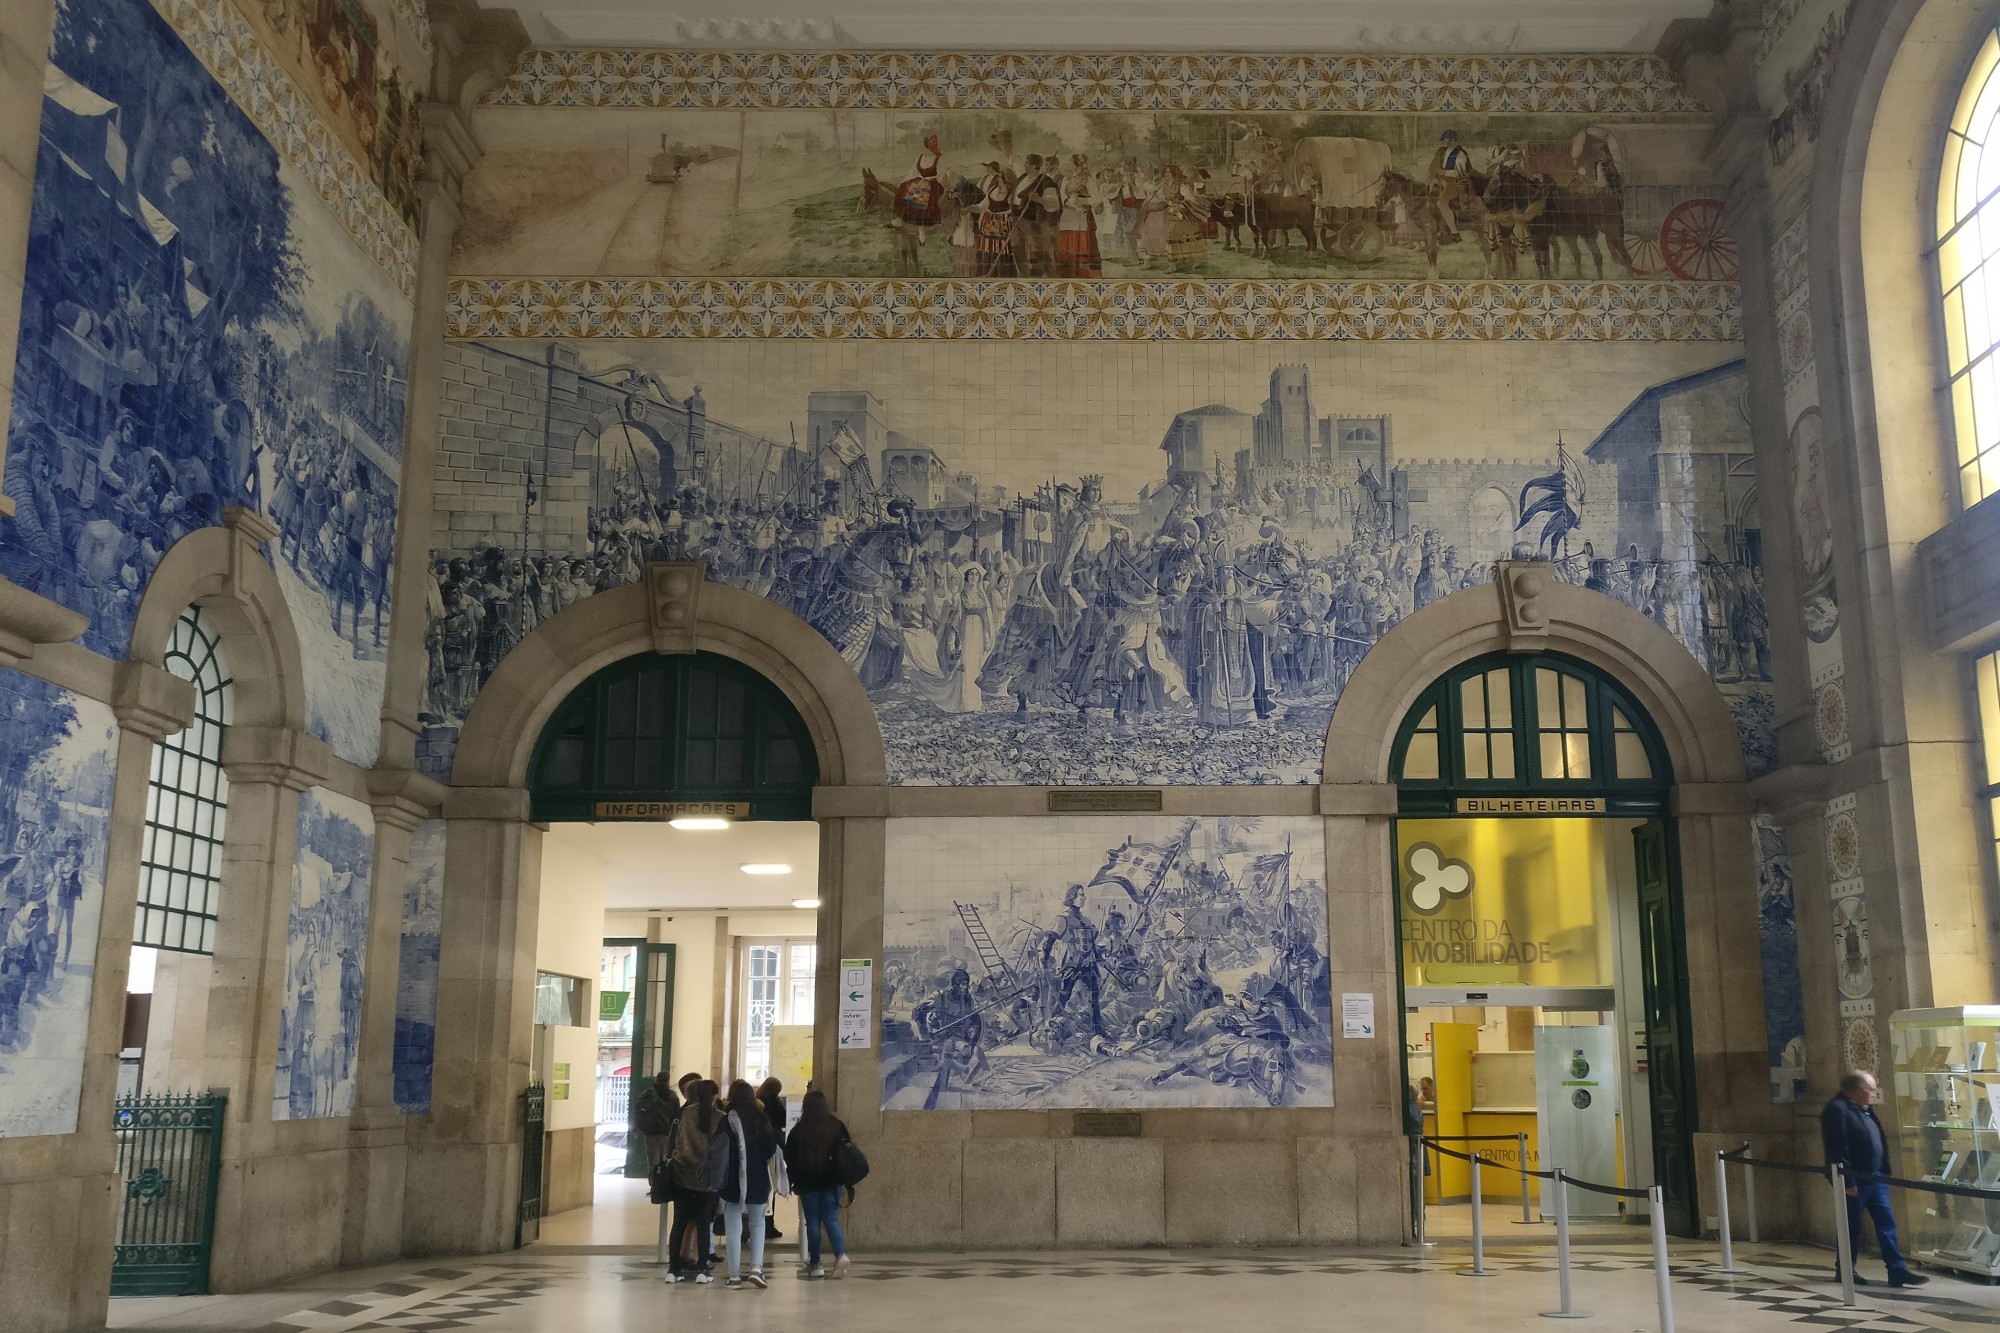 Foto: Gare de São Bento - Porto, Portugal